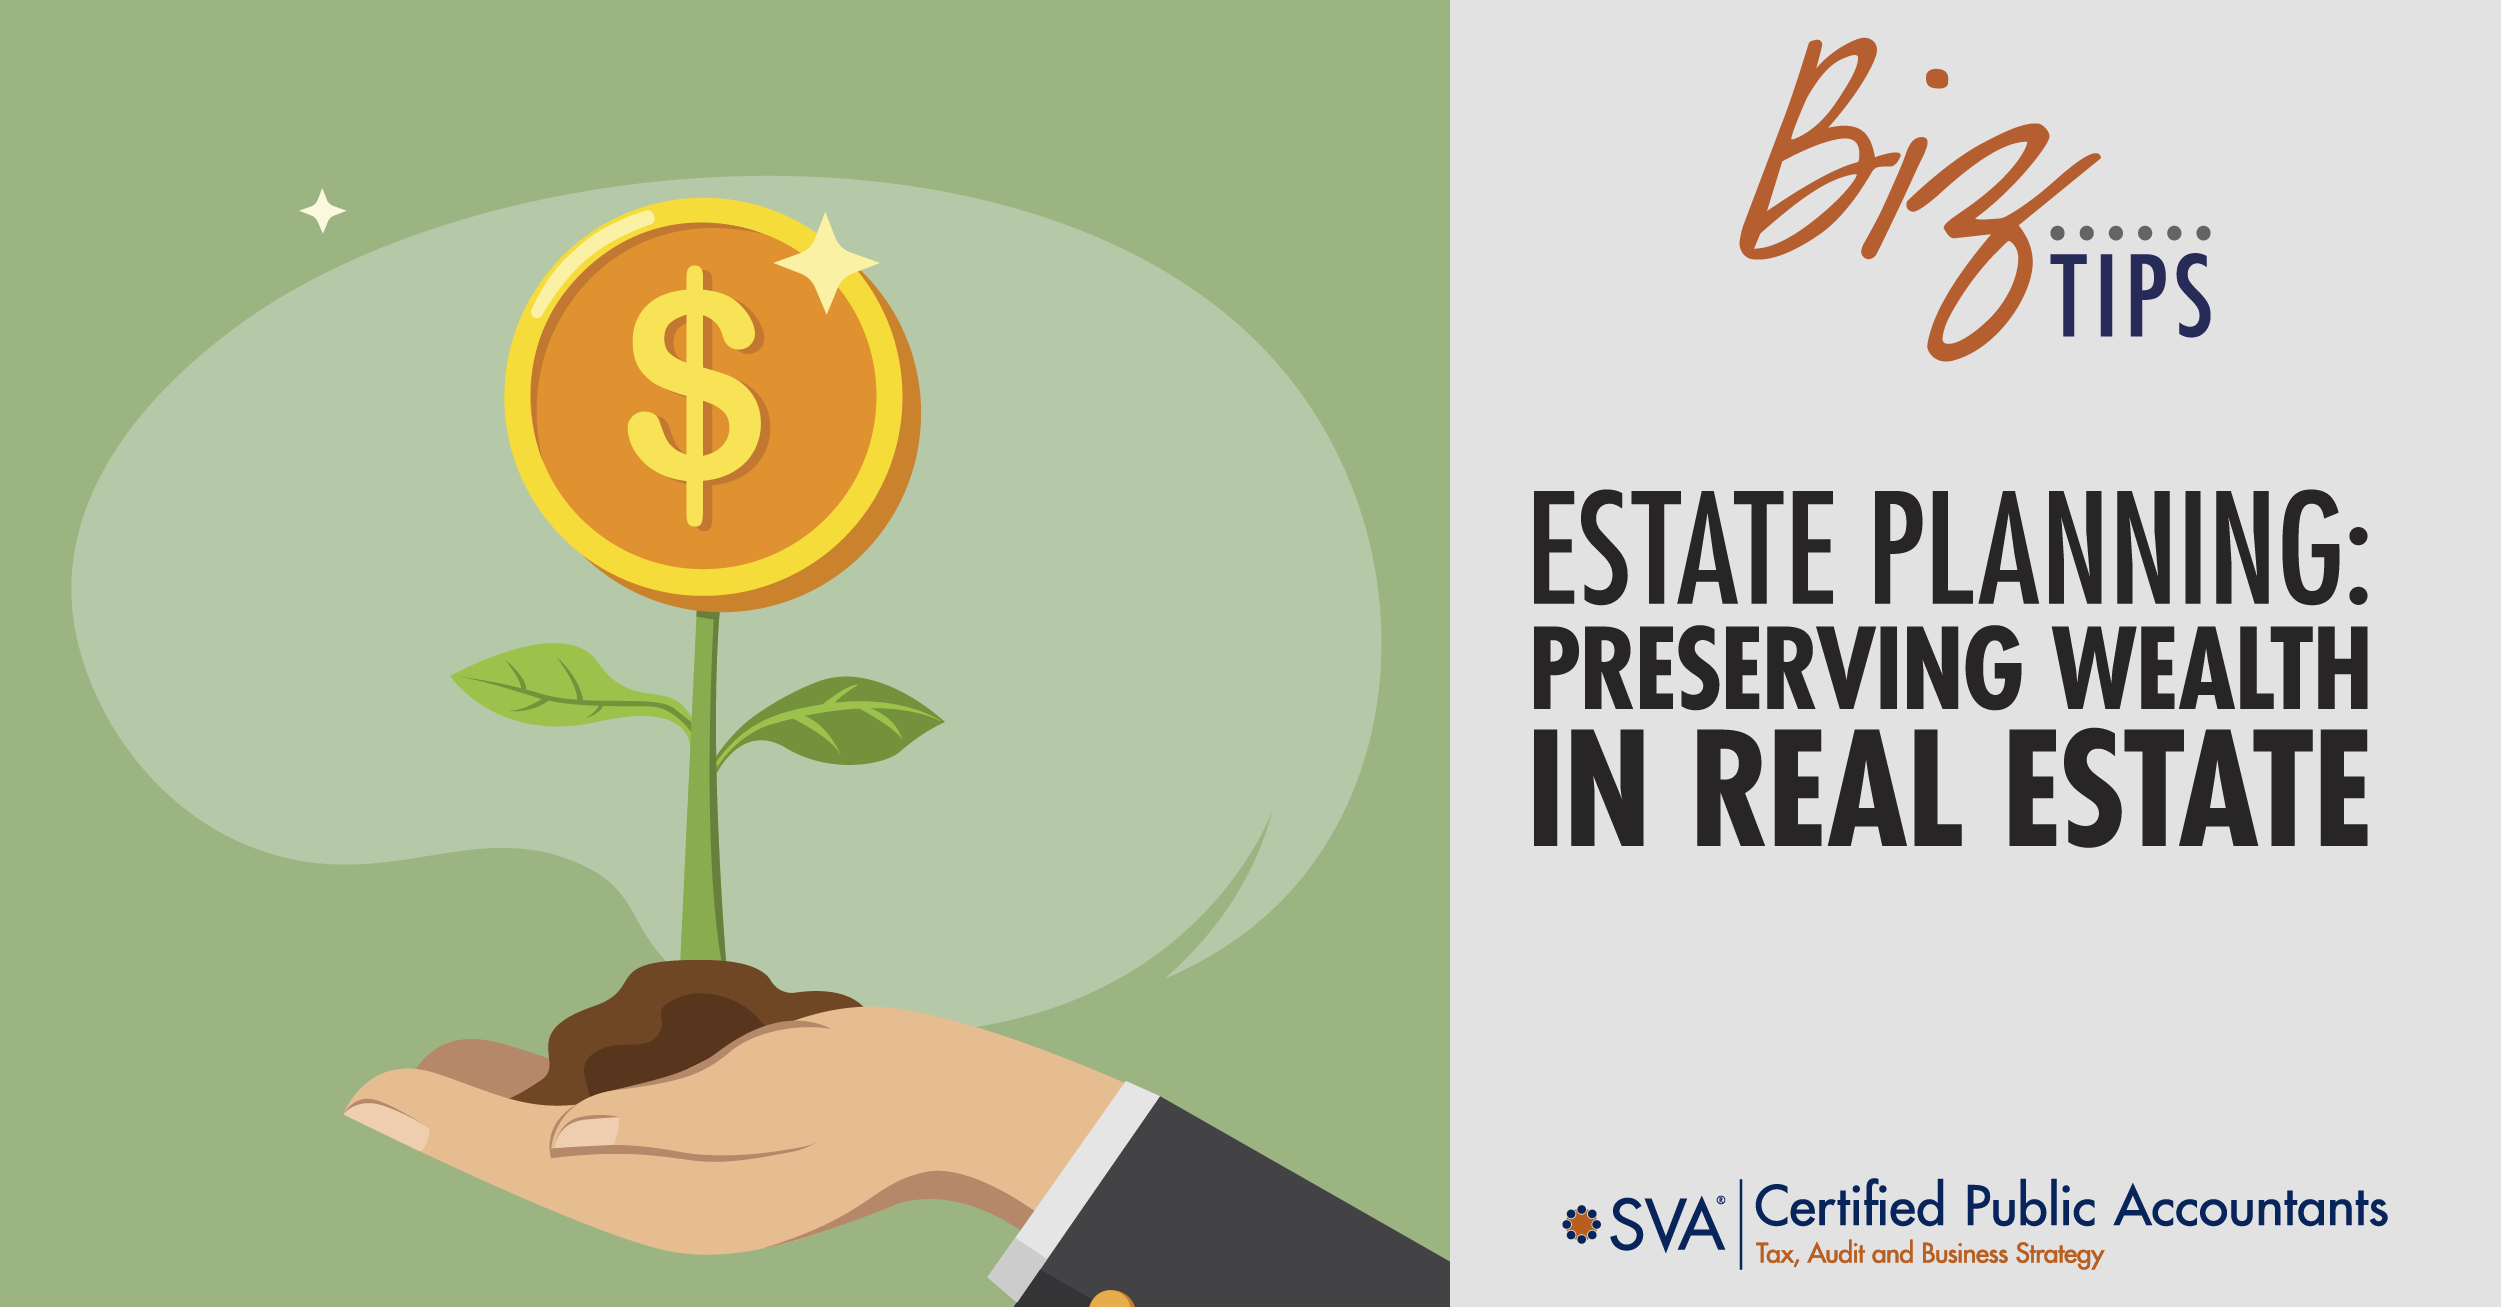 Estate Planning: Preserving Wealth in Real Estate